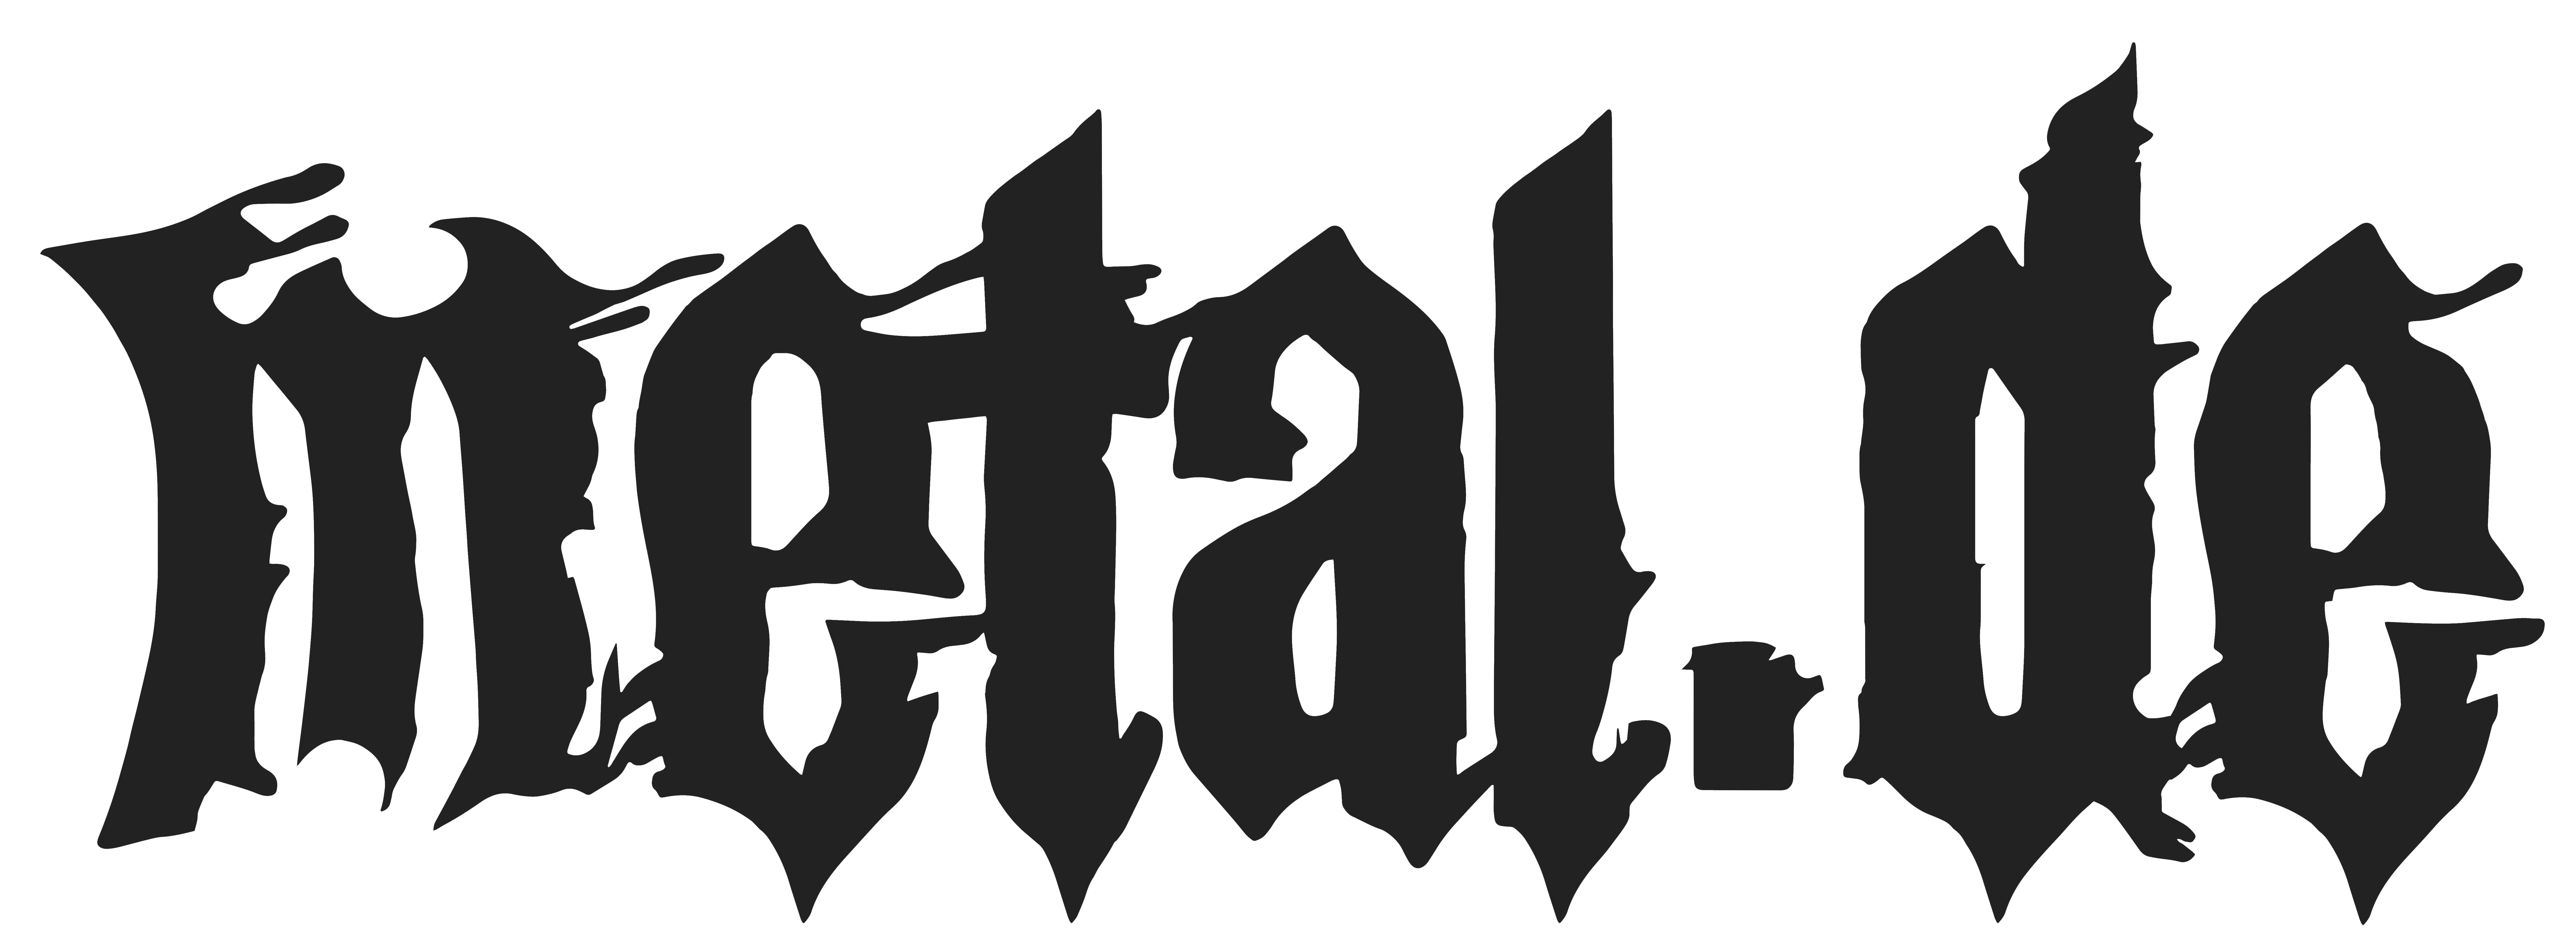 metal_de_2016_black